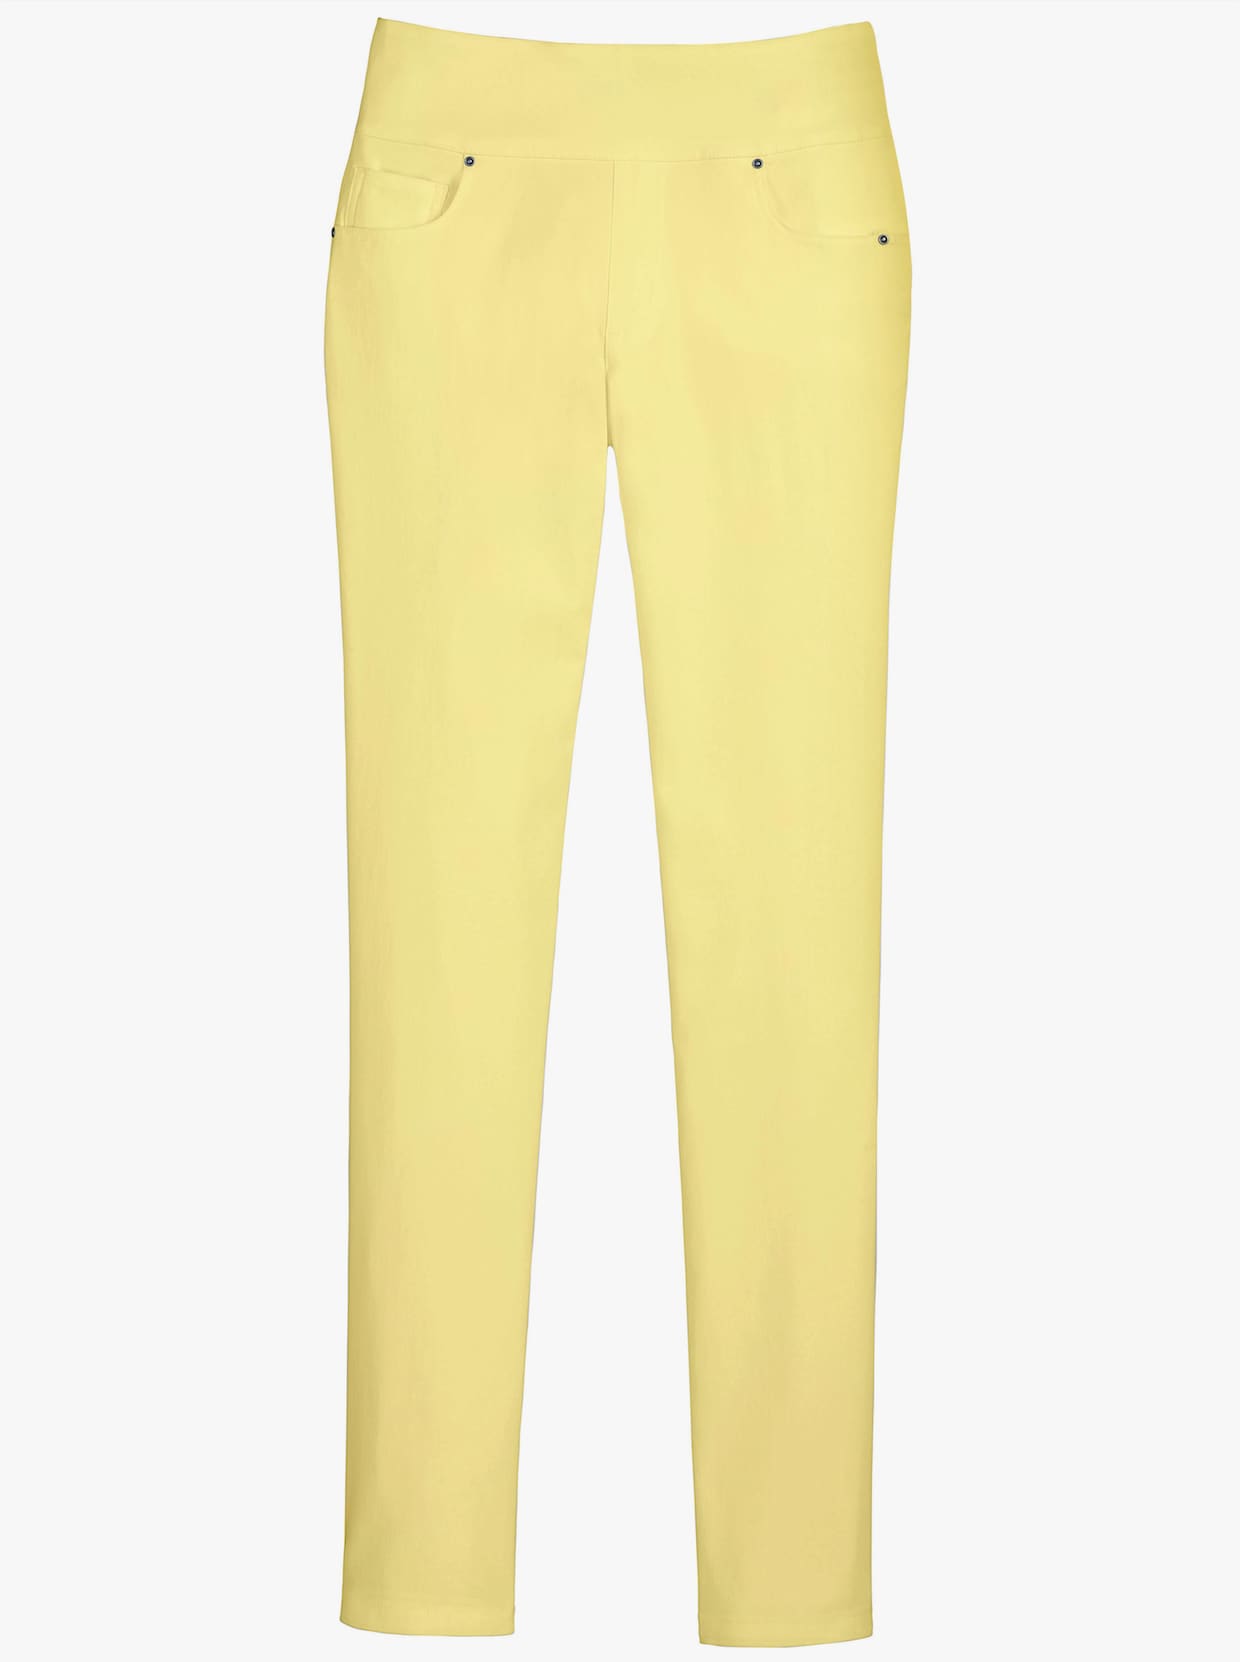 Pantalon extensible - jaune vanille